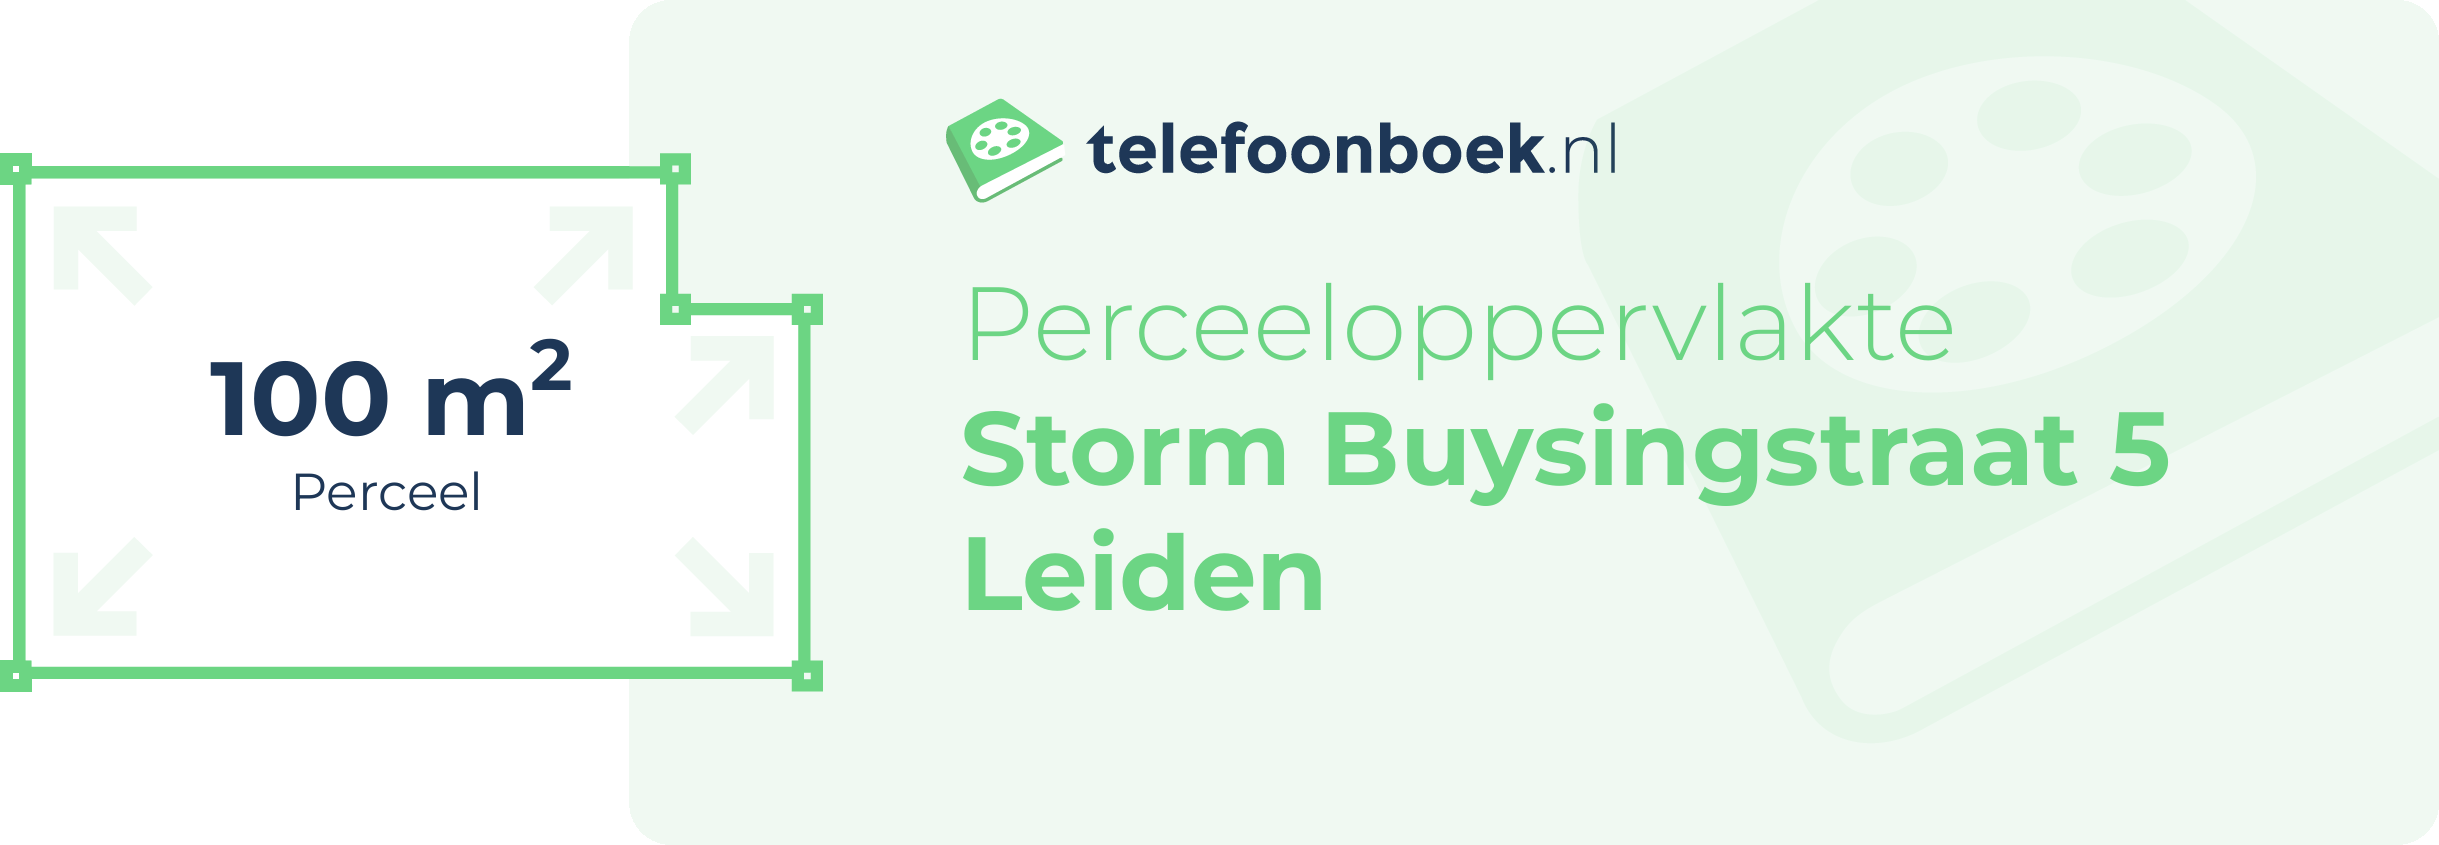 Perceeloppervlakte Storm Buysingstraat 5 Leiden